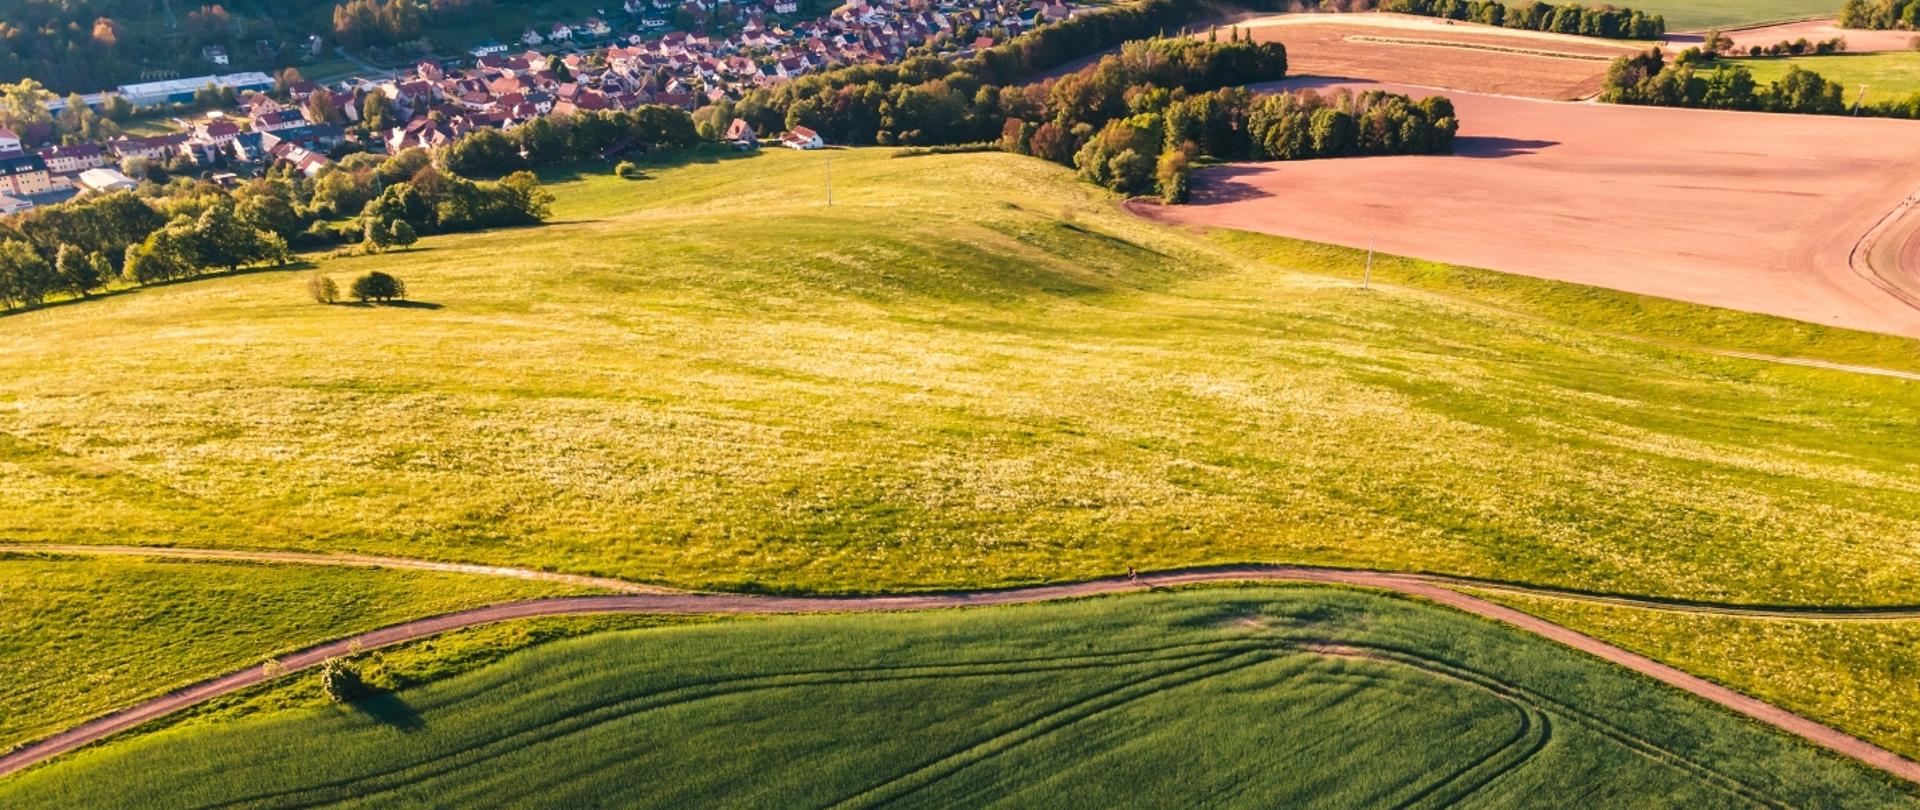 Widok z lotu ptaka na zielone pola uprawne oraz wioskę w dolinie.